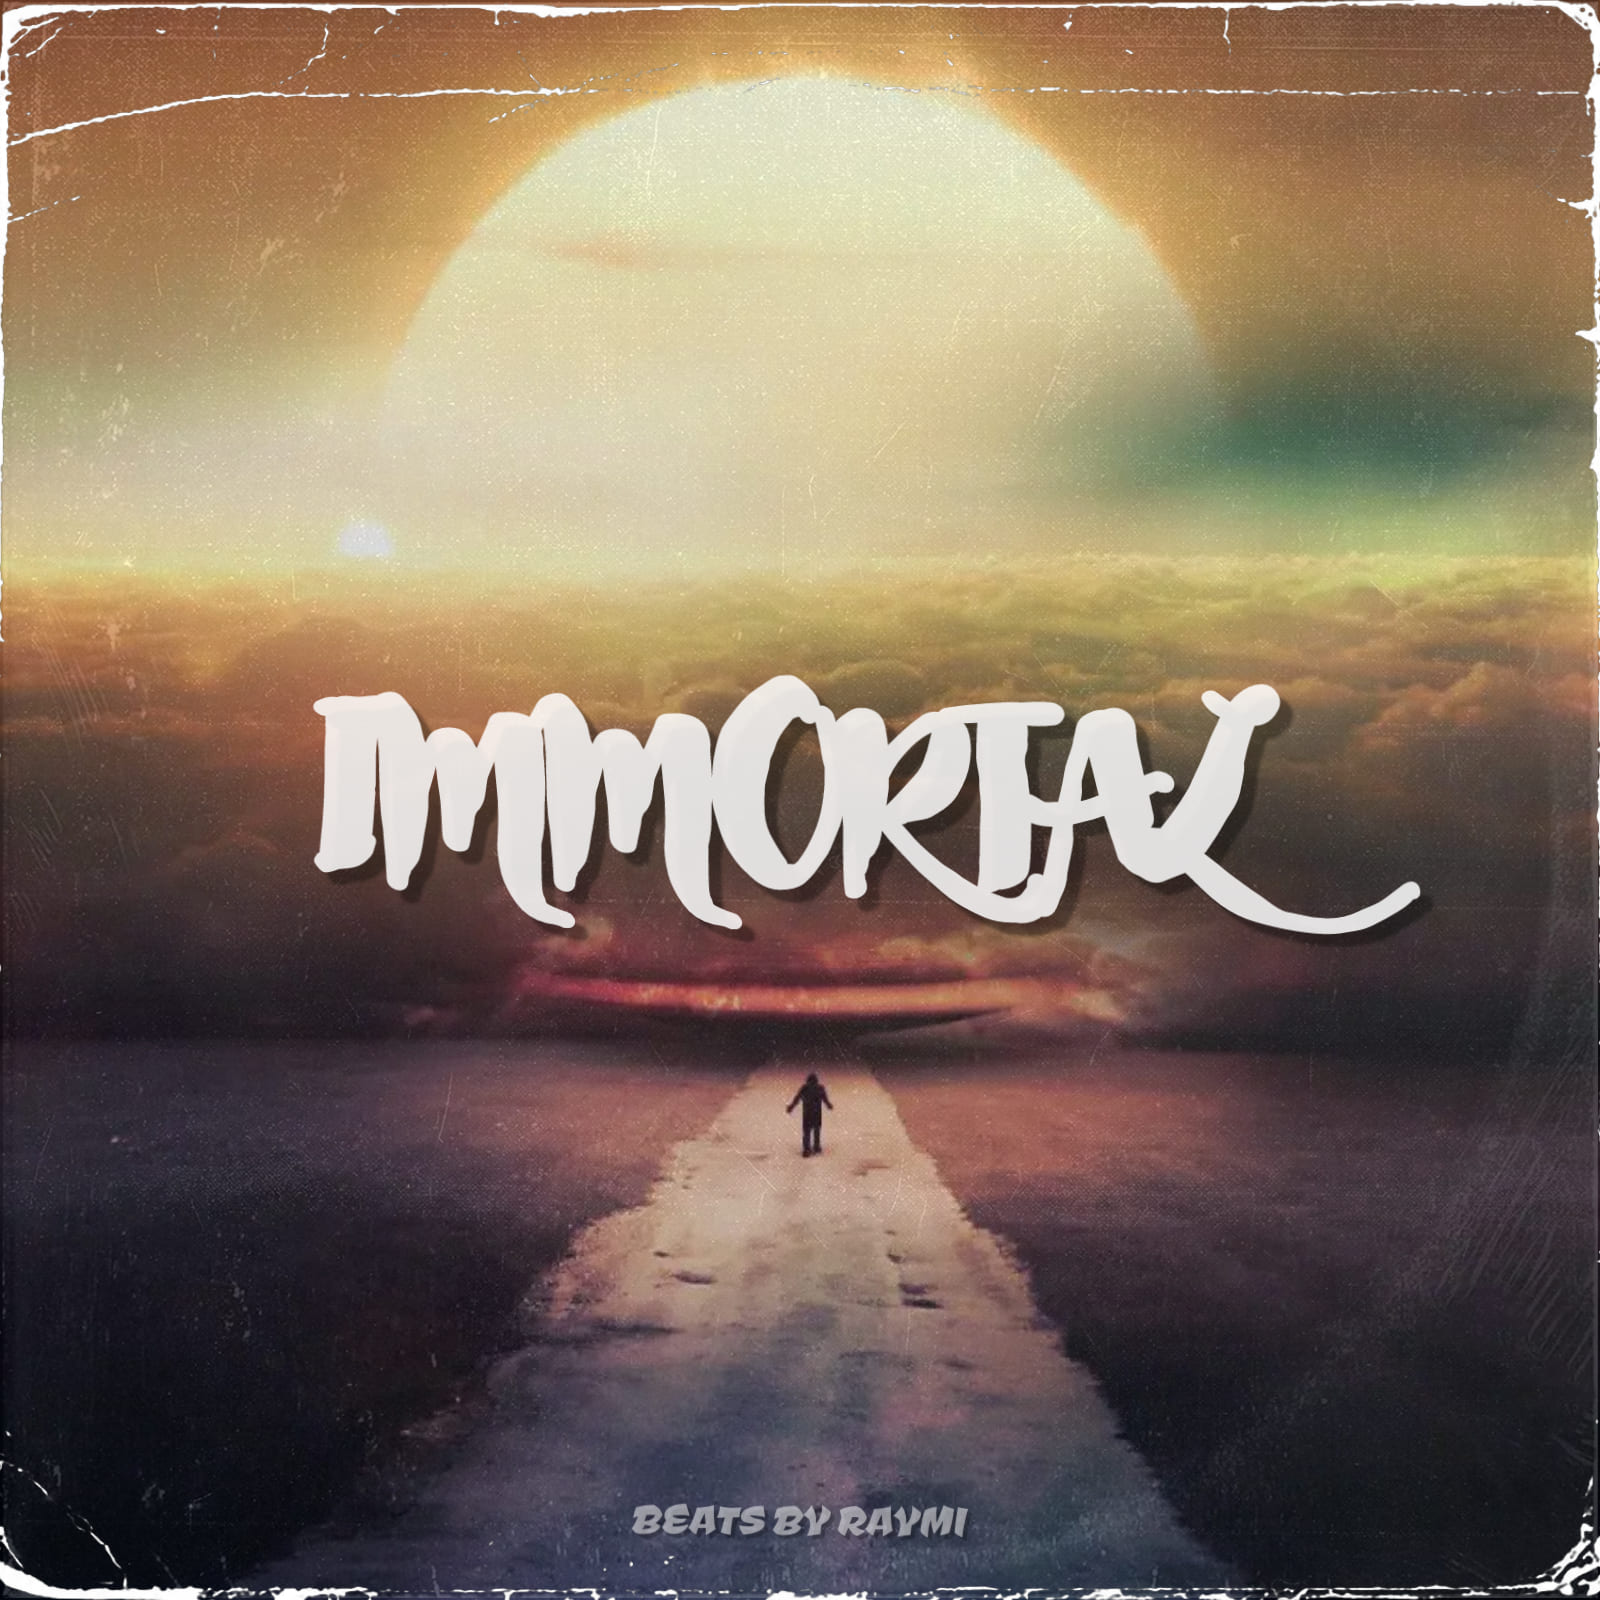 обложка бита, Raymi, музыка, cover, Immortal (красивый, эмоциональный поп-рок бит)